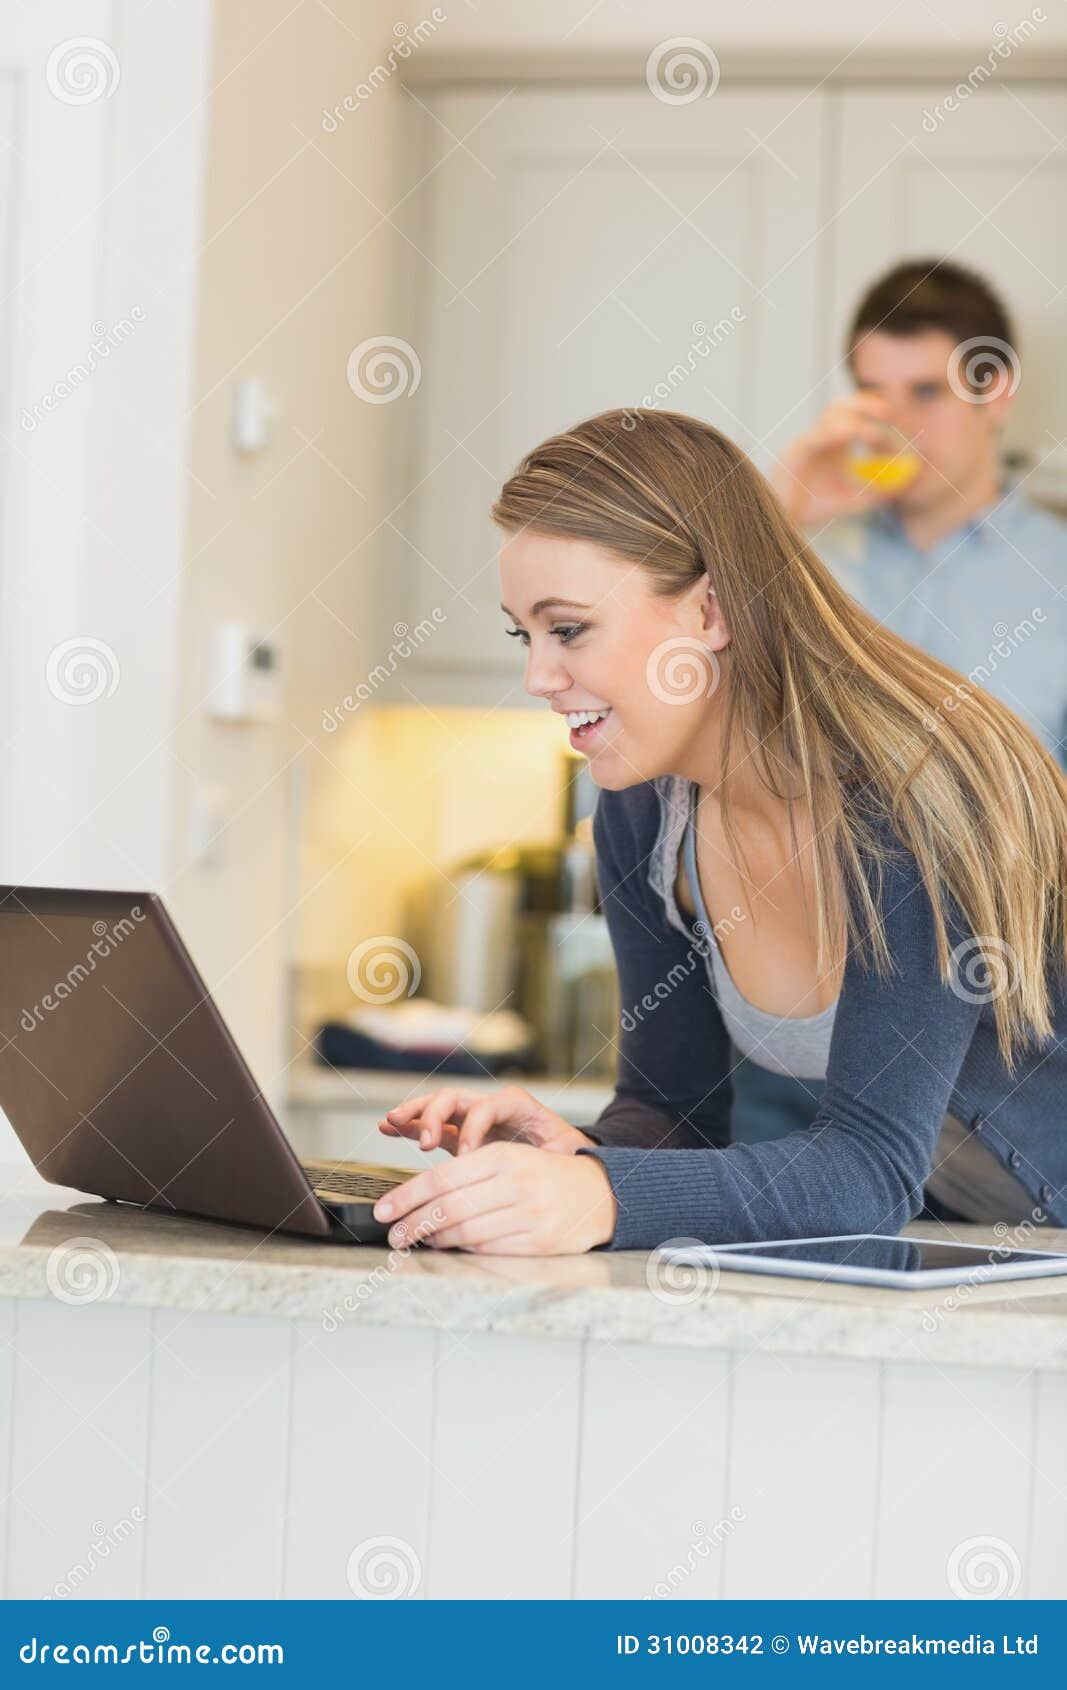 woman talking on webcam